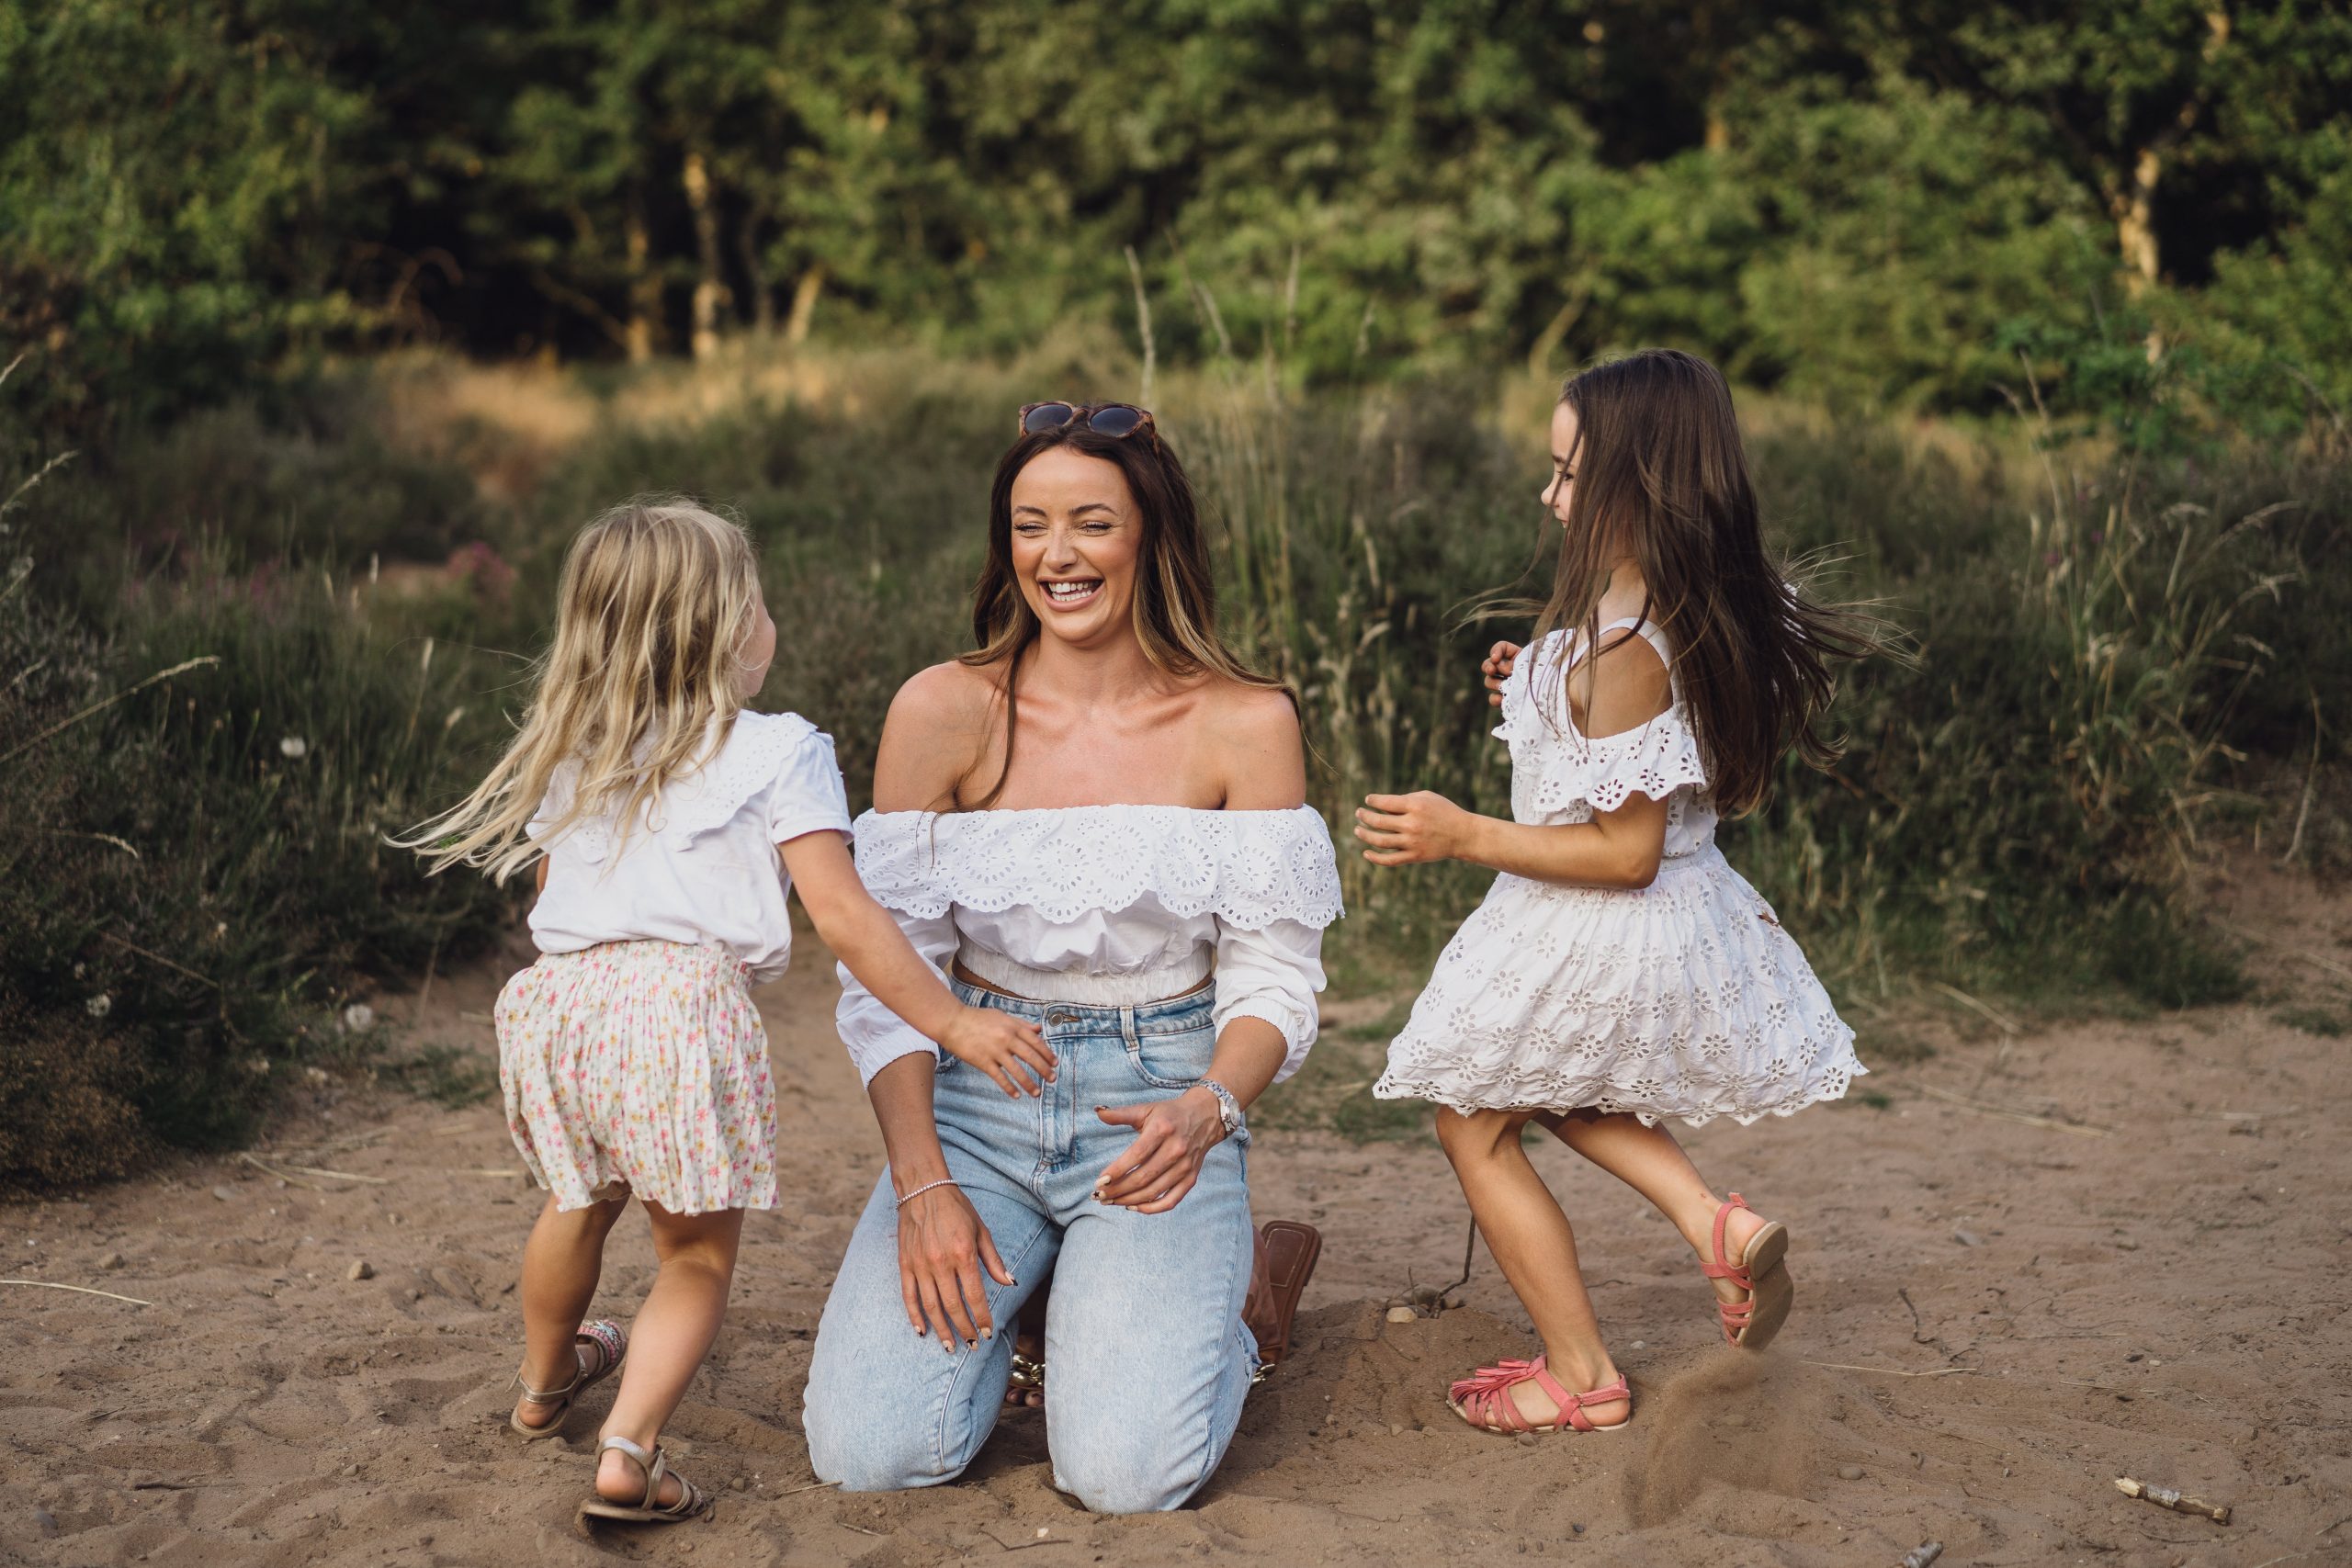 Cheshire family photographer // Jessica & her girls